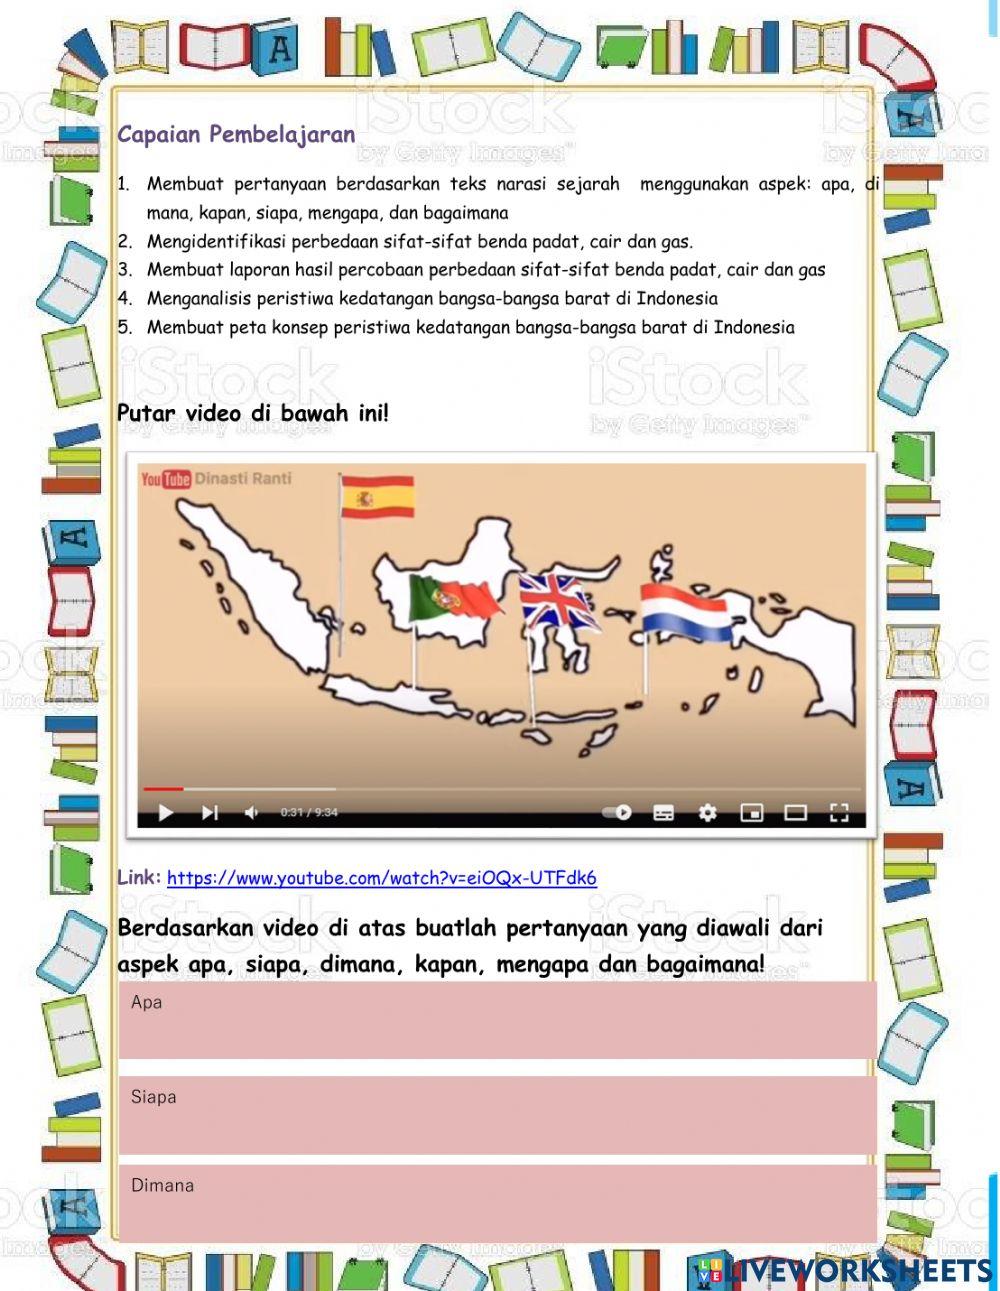 Tema 7 peristiwa subtema 1 peristiwa kedatangan bangsa barat di indonesia